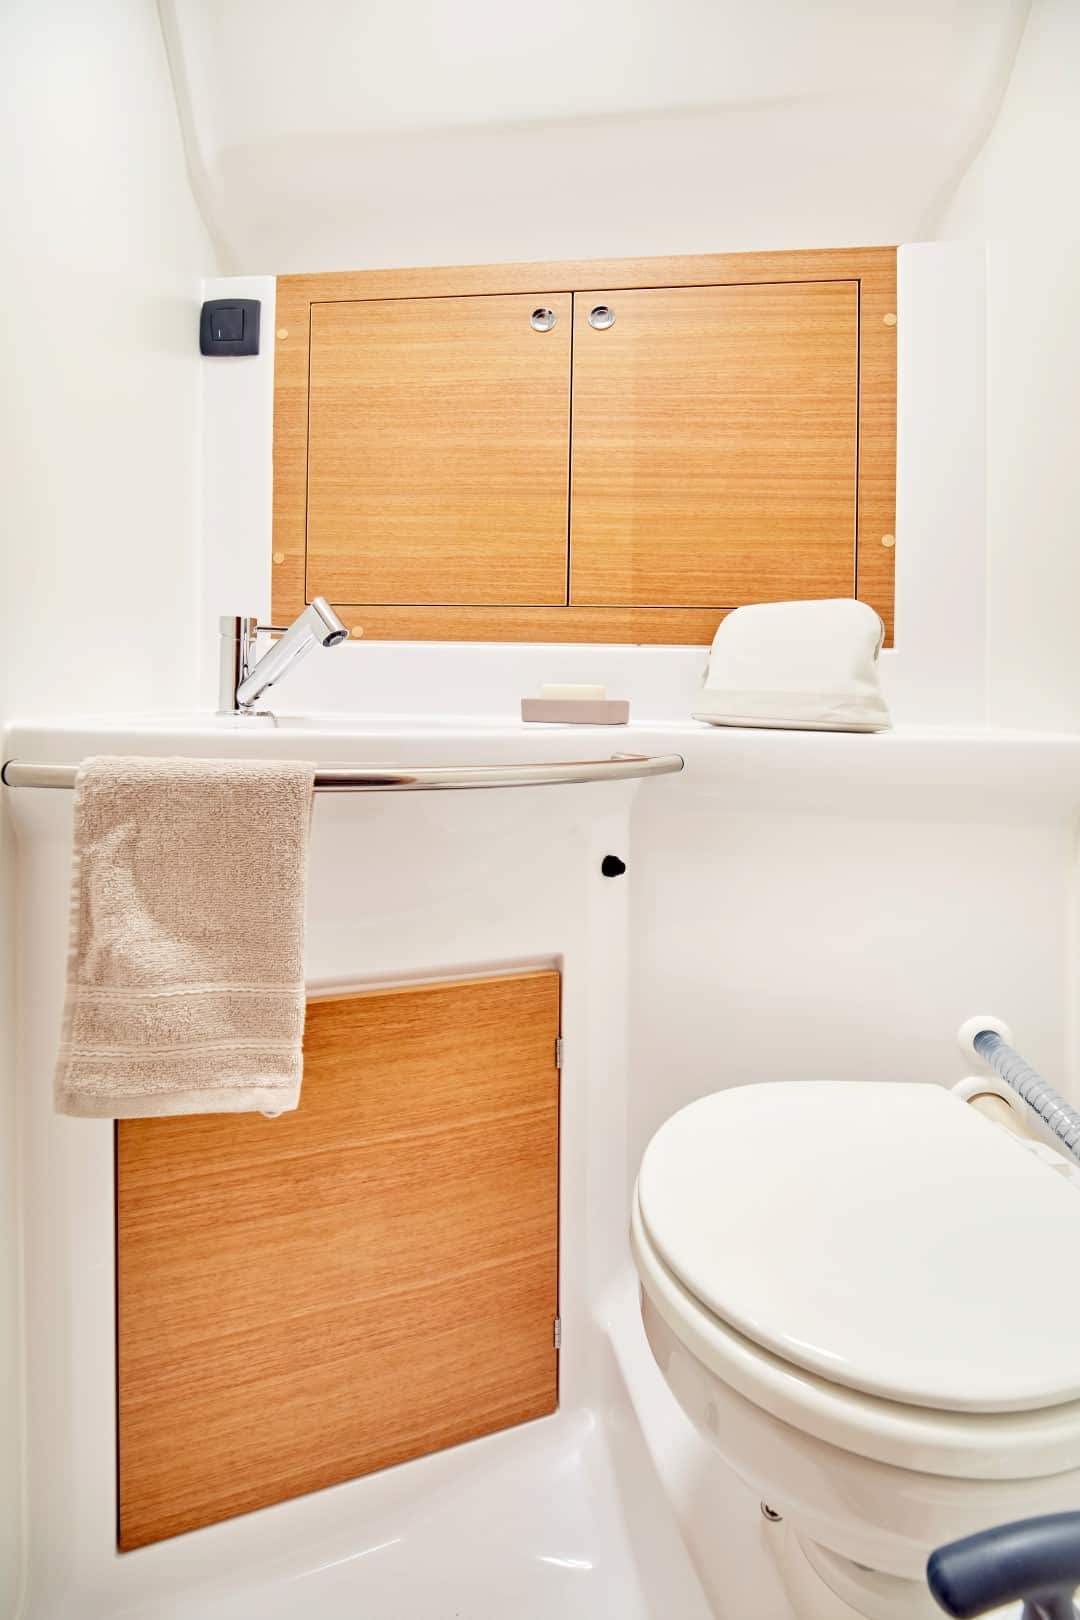 Ein sauberes, modernes Badezimmer mit einer weißen Toilette auf der rechten Seite, einem Waschbecken mit einem Holzschrank darüber und einem passenden beigen Handtuch, das an einer Stange hängt. Helle Beleuchtung erhellt den Raum während der Nutzung im Rahmen eines Segelurlaubs.